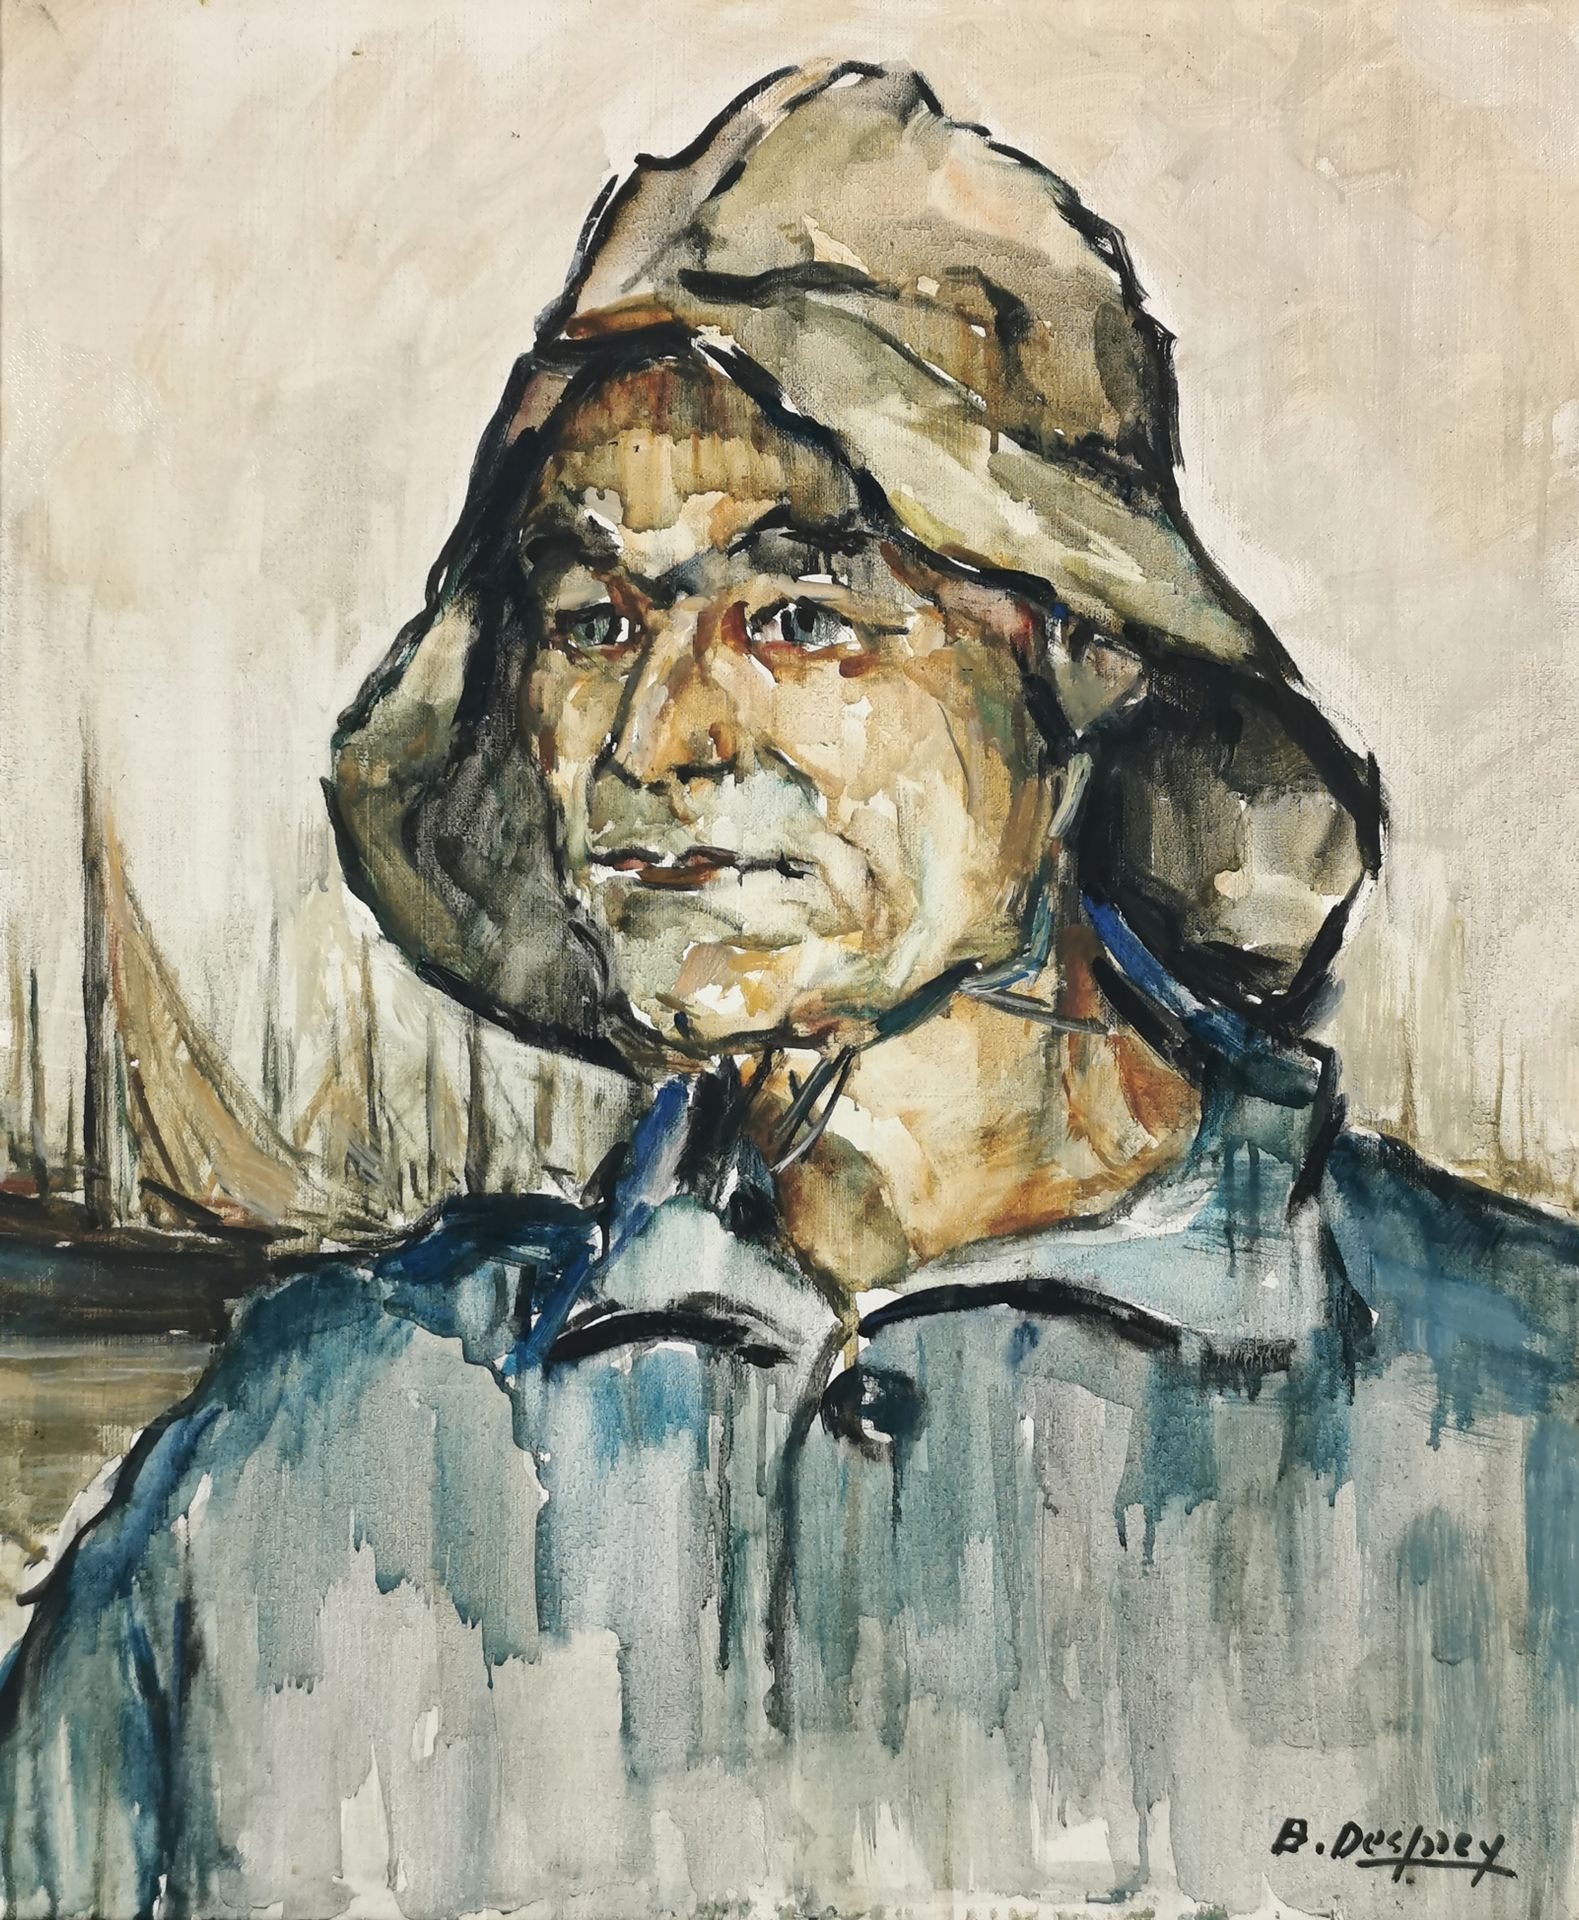 Null B. DESPREY (escuela del siglo XX)

Retrato de un pescador

Óleo sobre lienz&hellip;